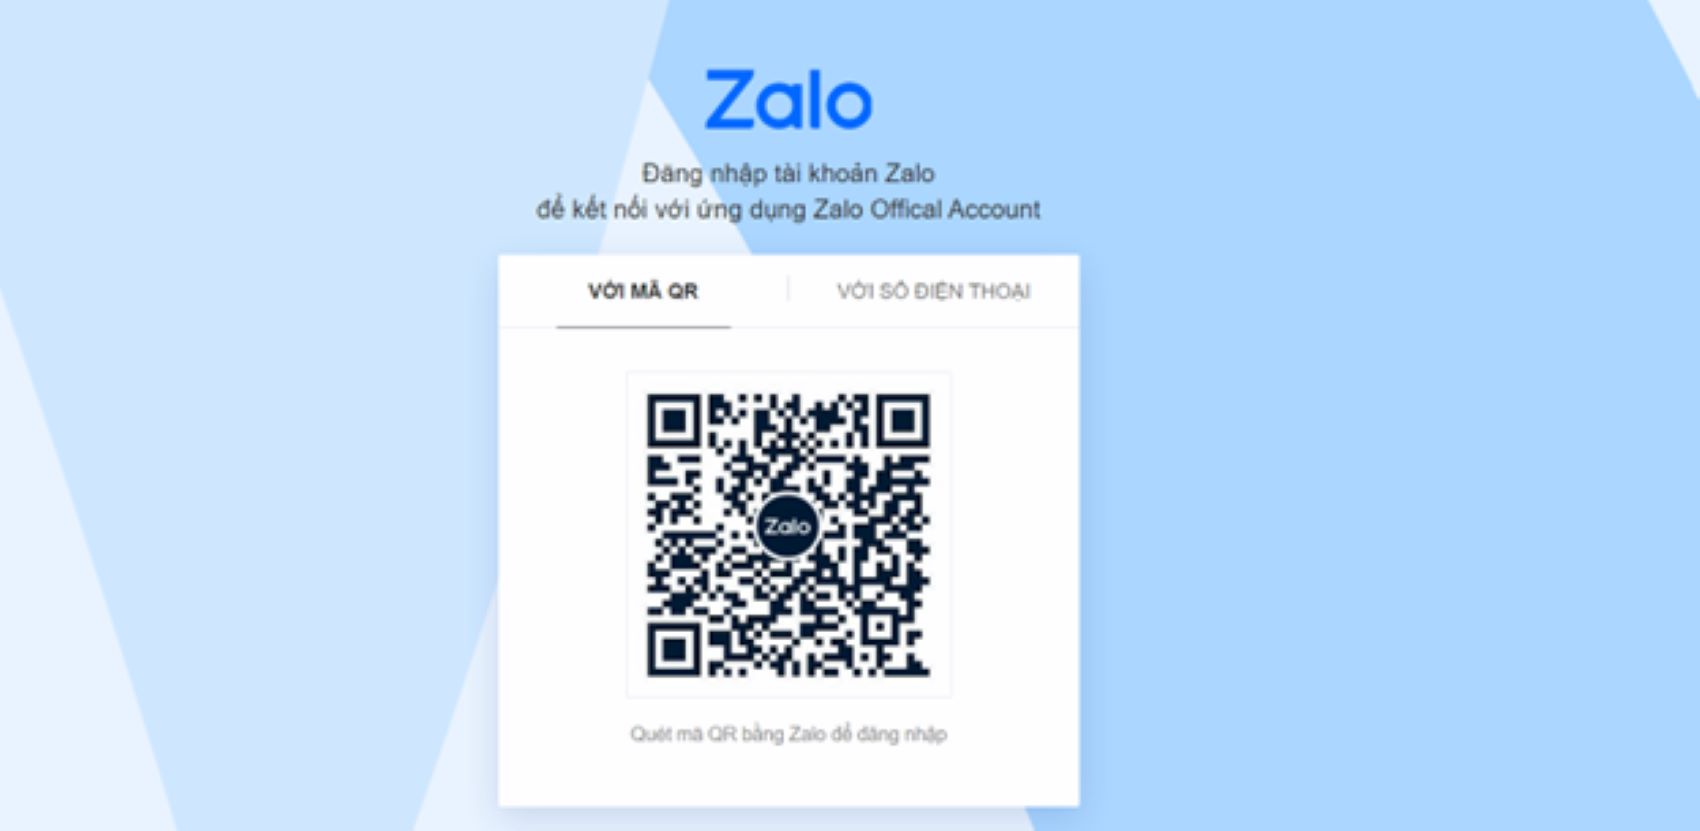 Để tạo Official Account, bạn phải đăng nhập vào tài khoản Zalo của mình trước